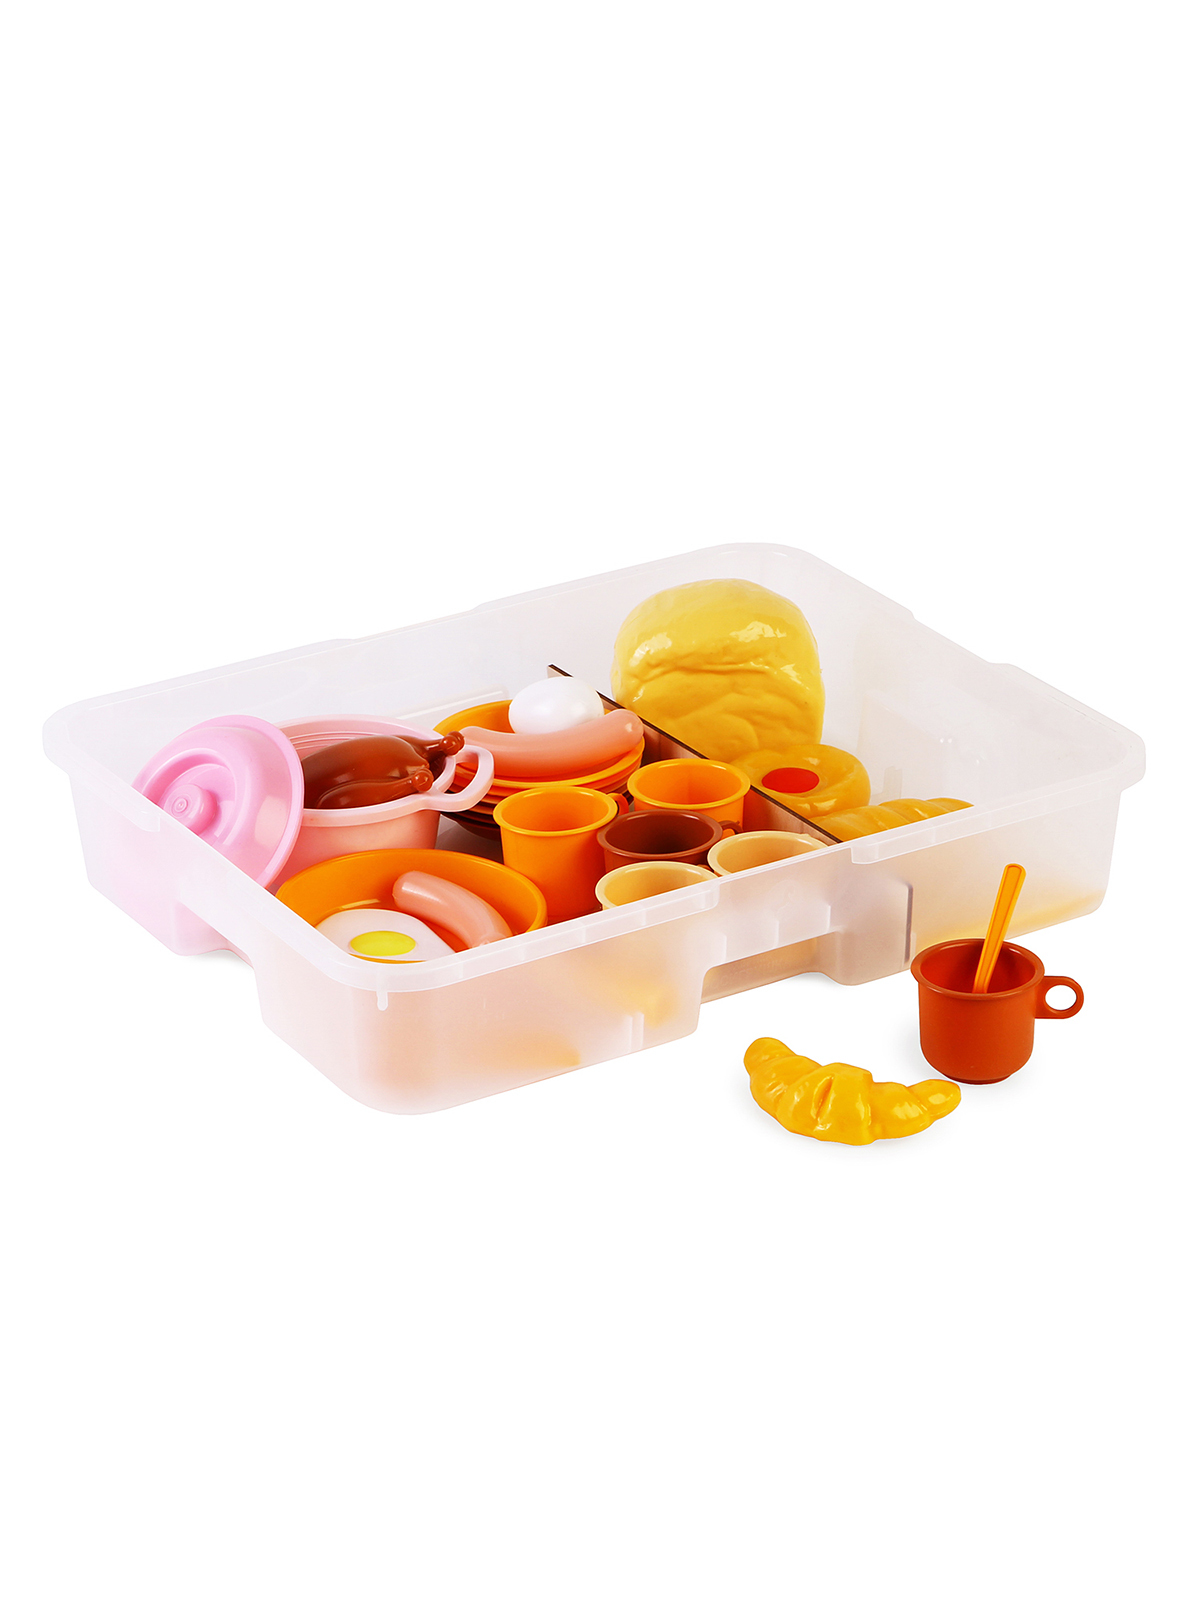 Столовый набор посуды Пир горой с комплектом продуктов, 41 предмет / Игротека